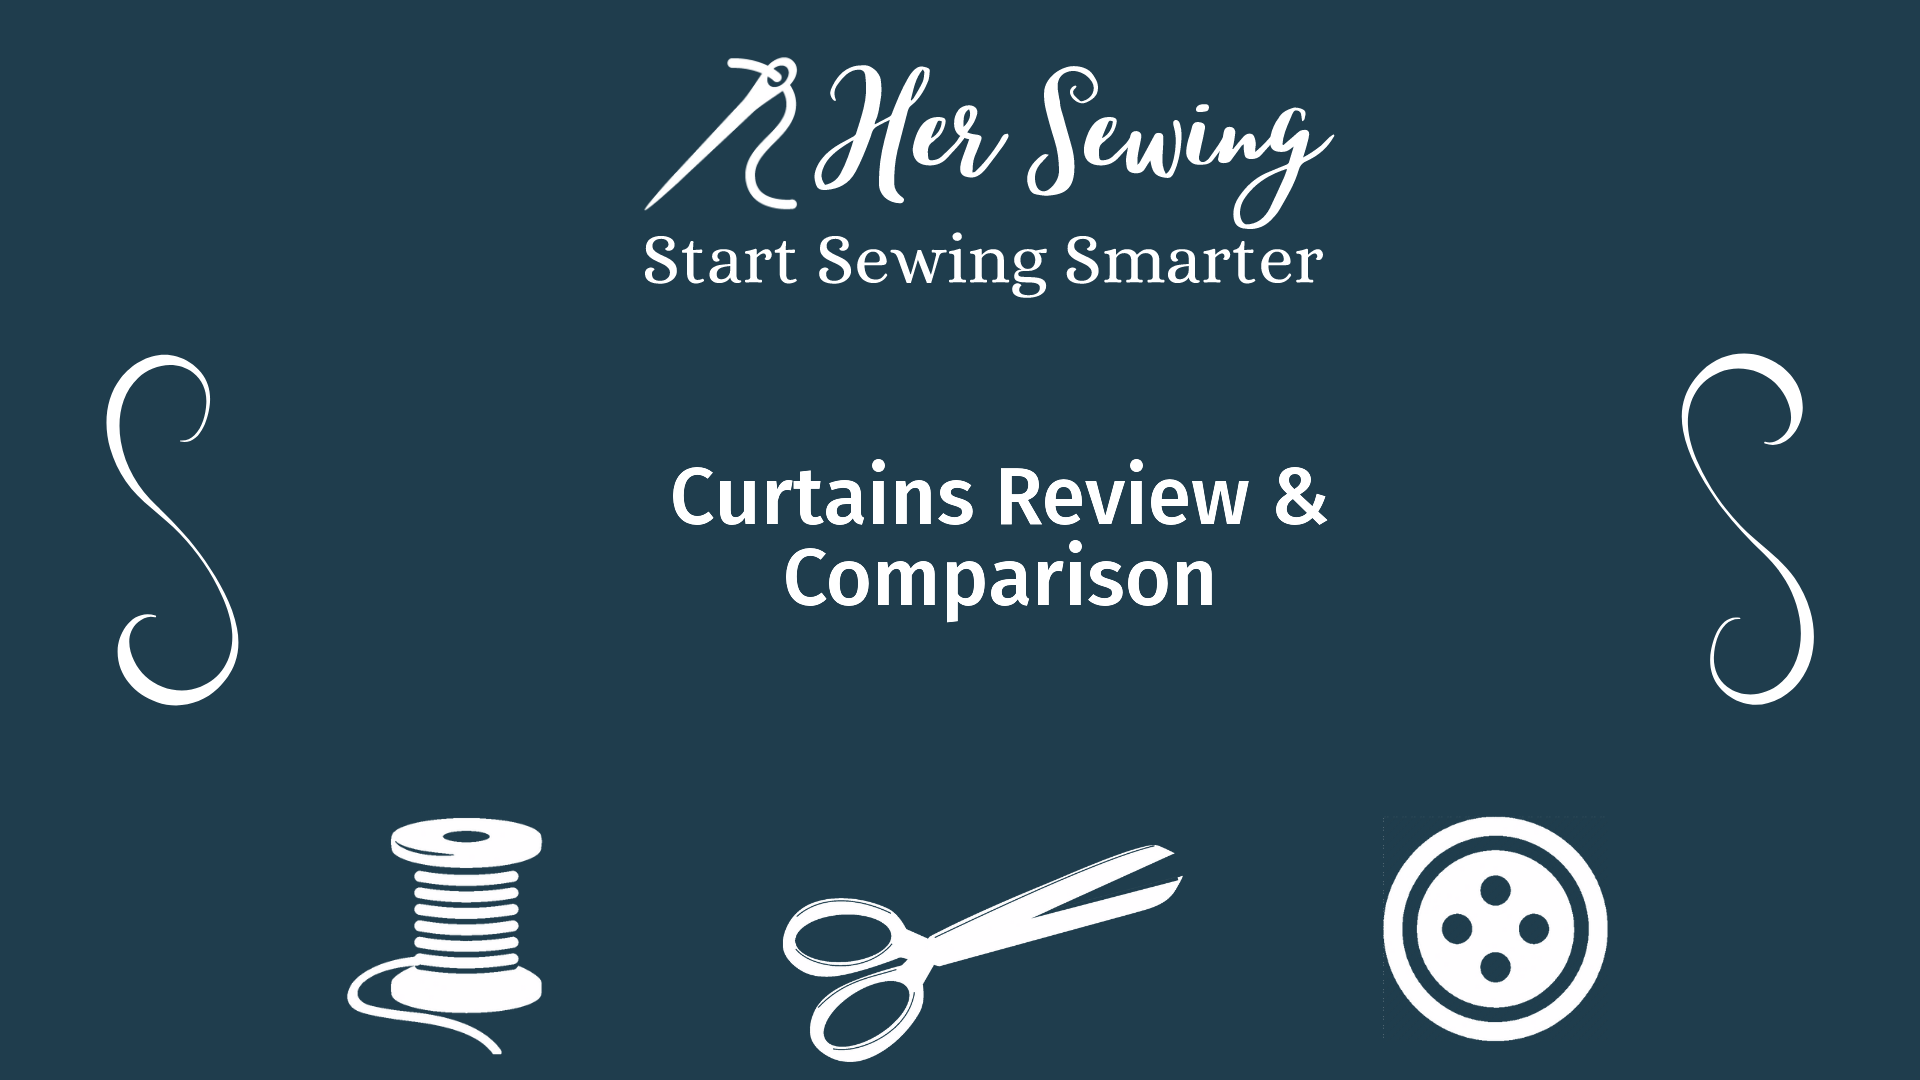 Curtains Review & Comparison